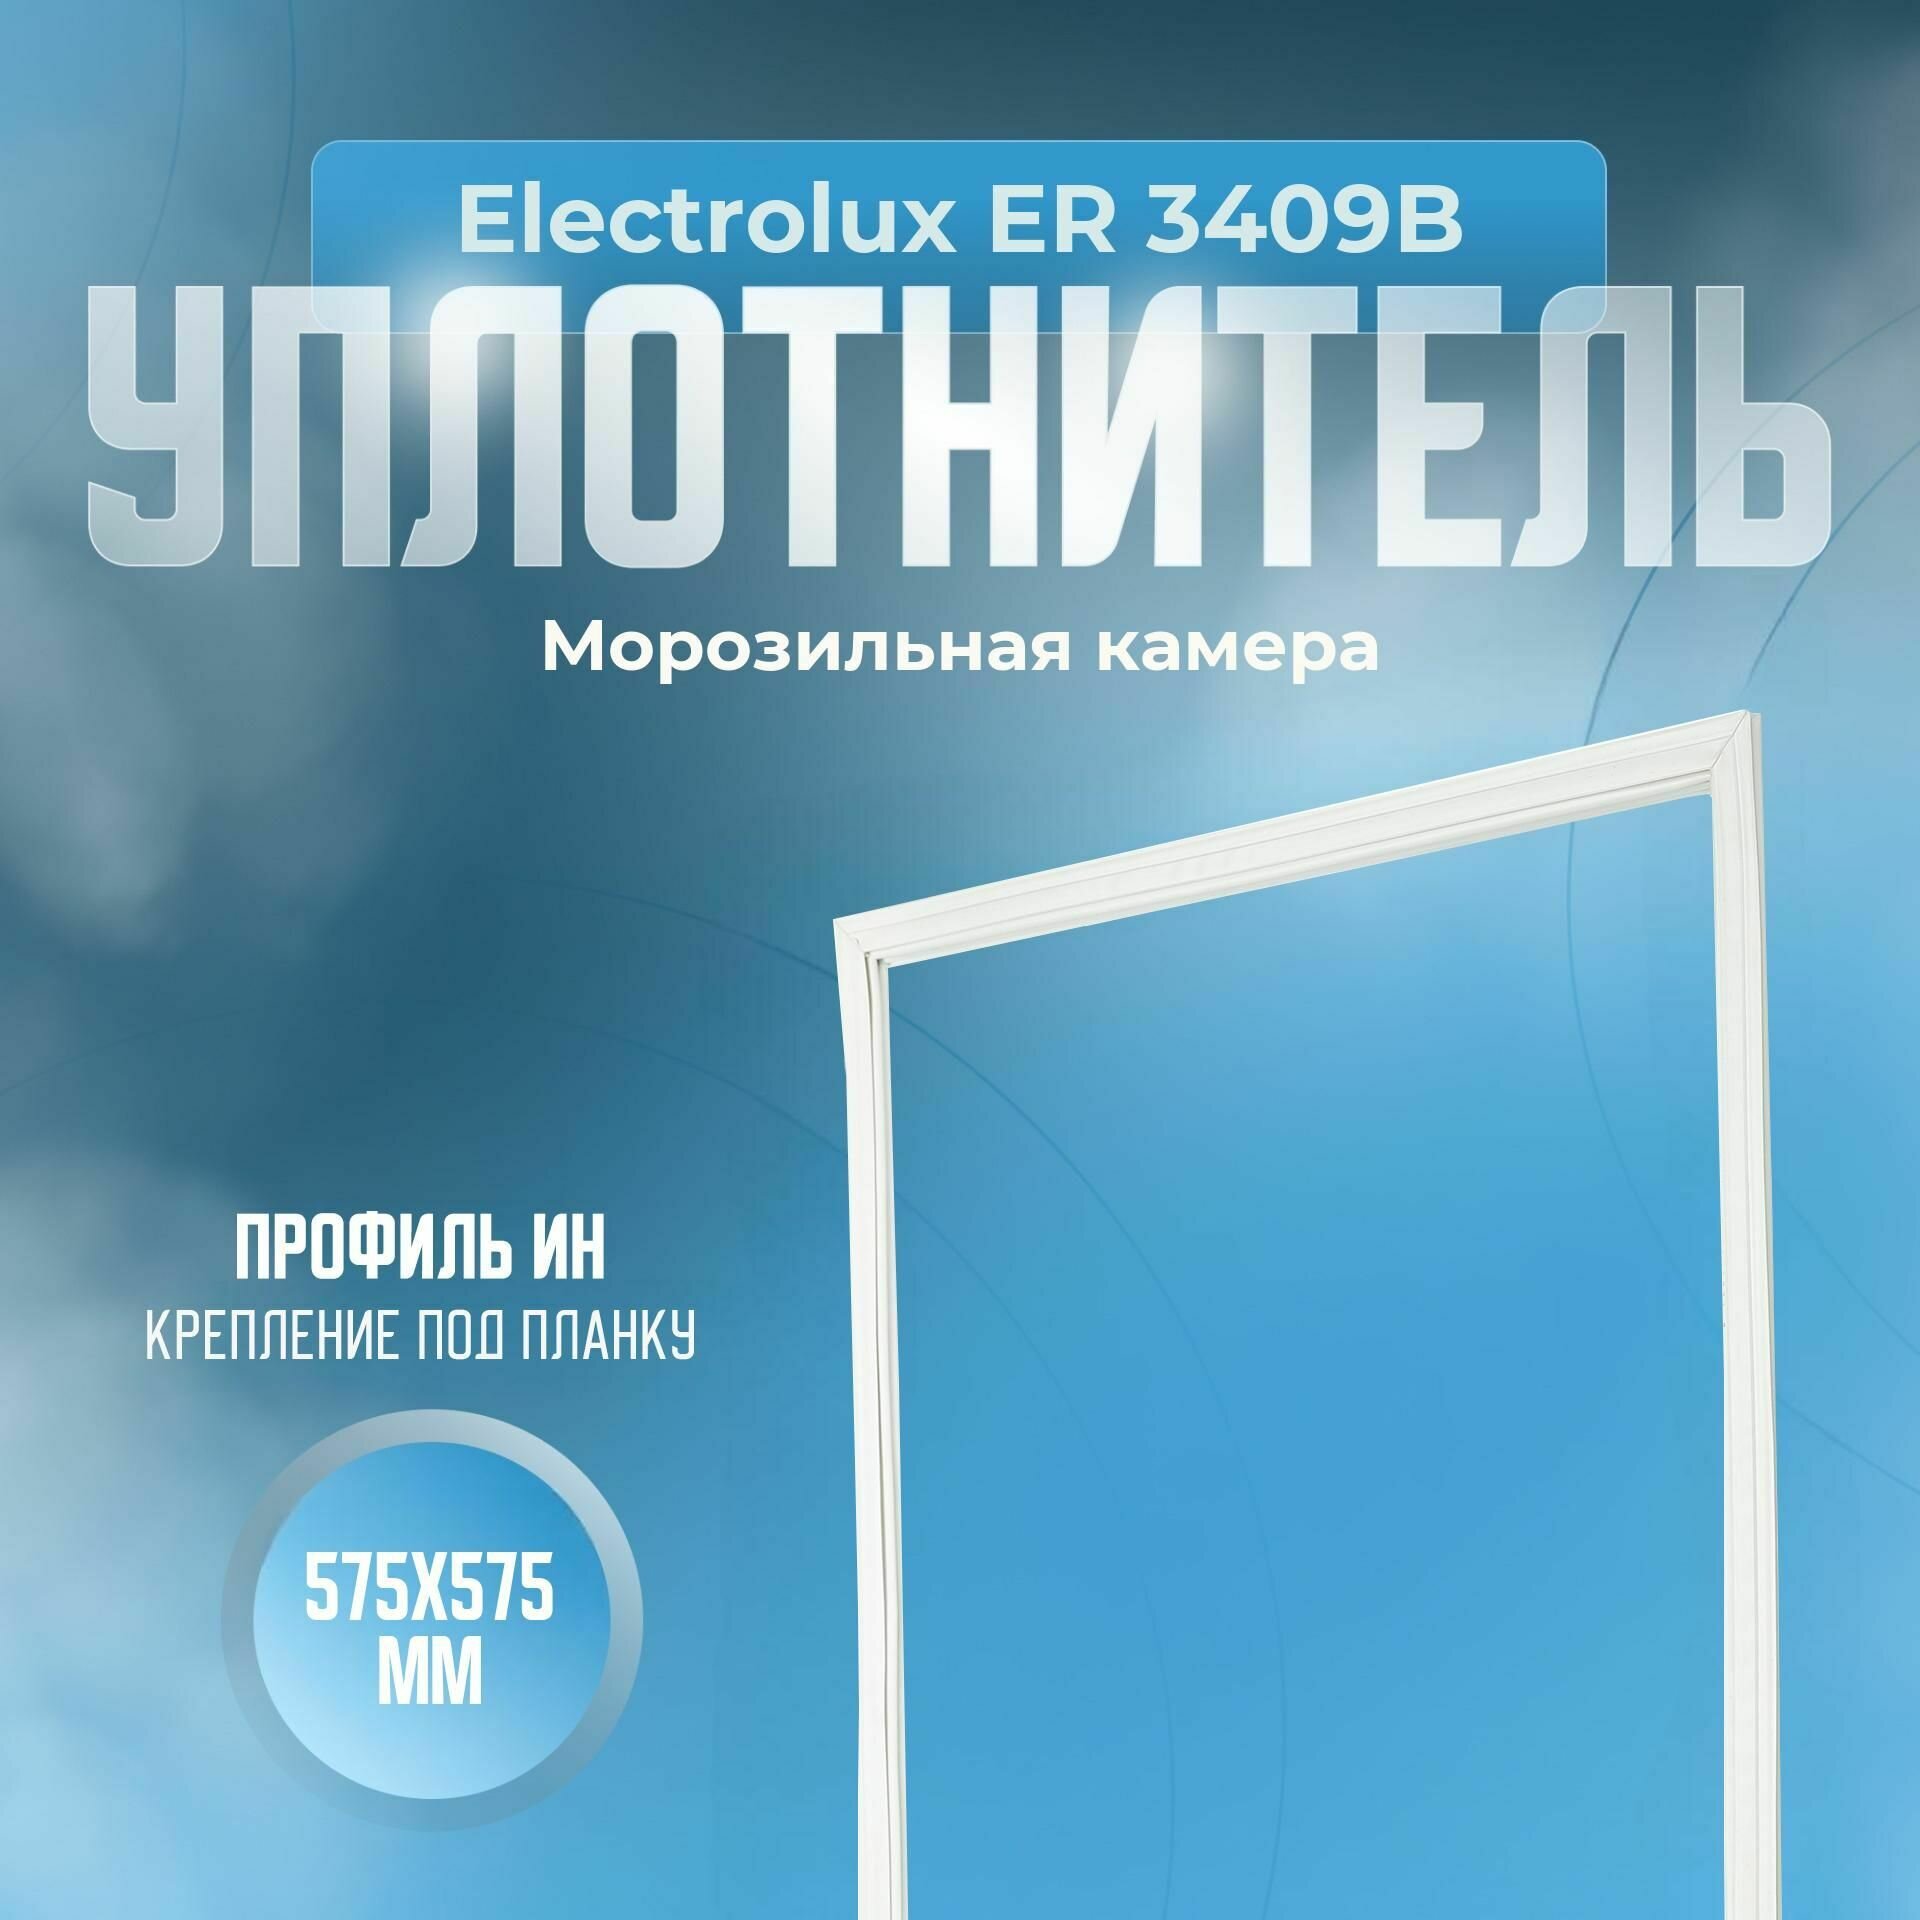 Уплотнитель Electrolux ER 3409B. м. к, Размер - 575х575 мм. ИН